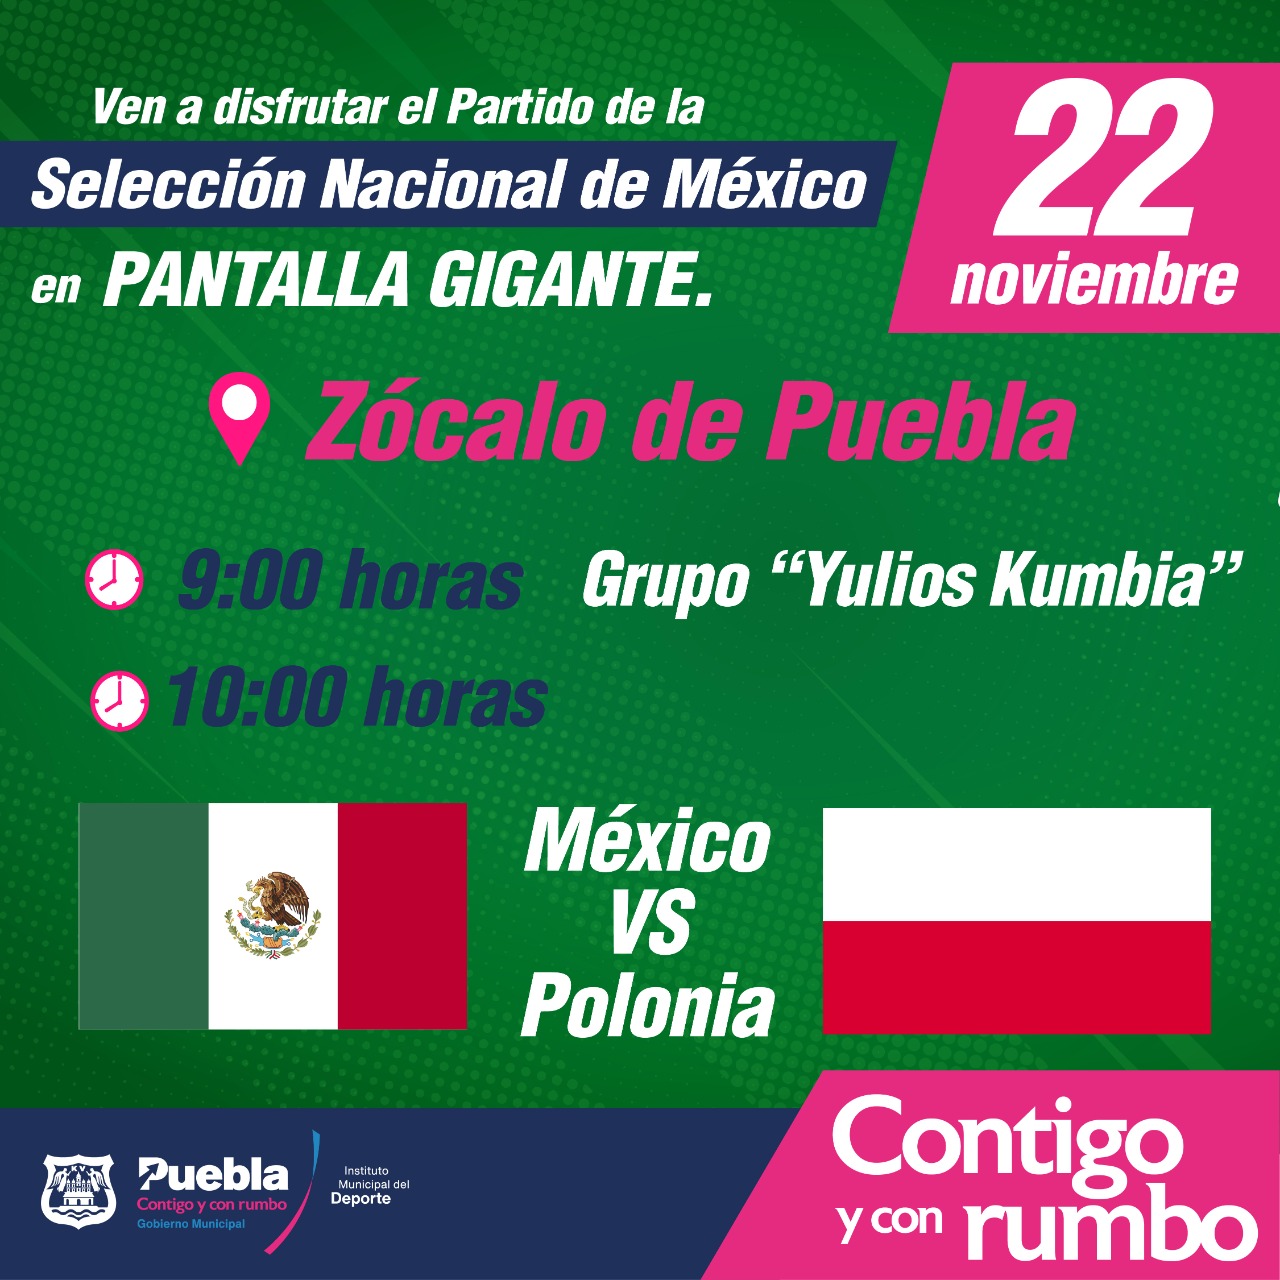 Invitan a ver el partido de la selección mexicana en el zócalo de Puebla